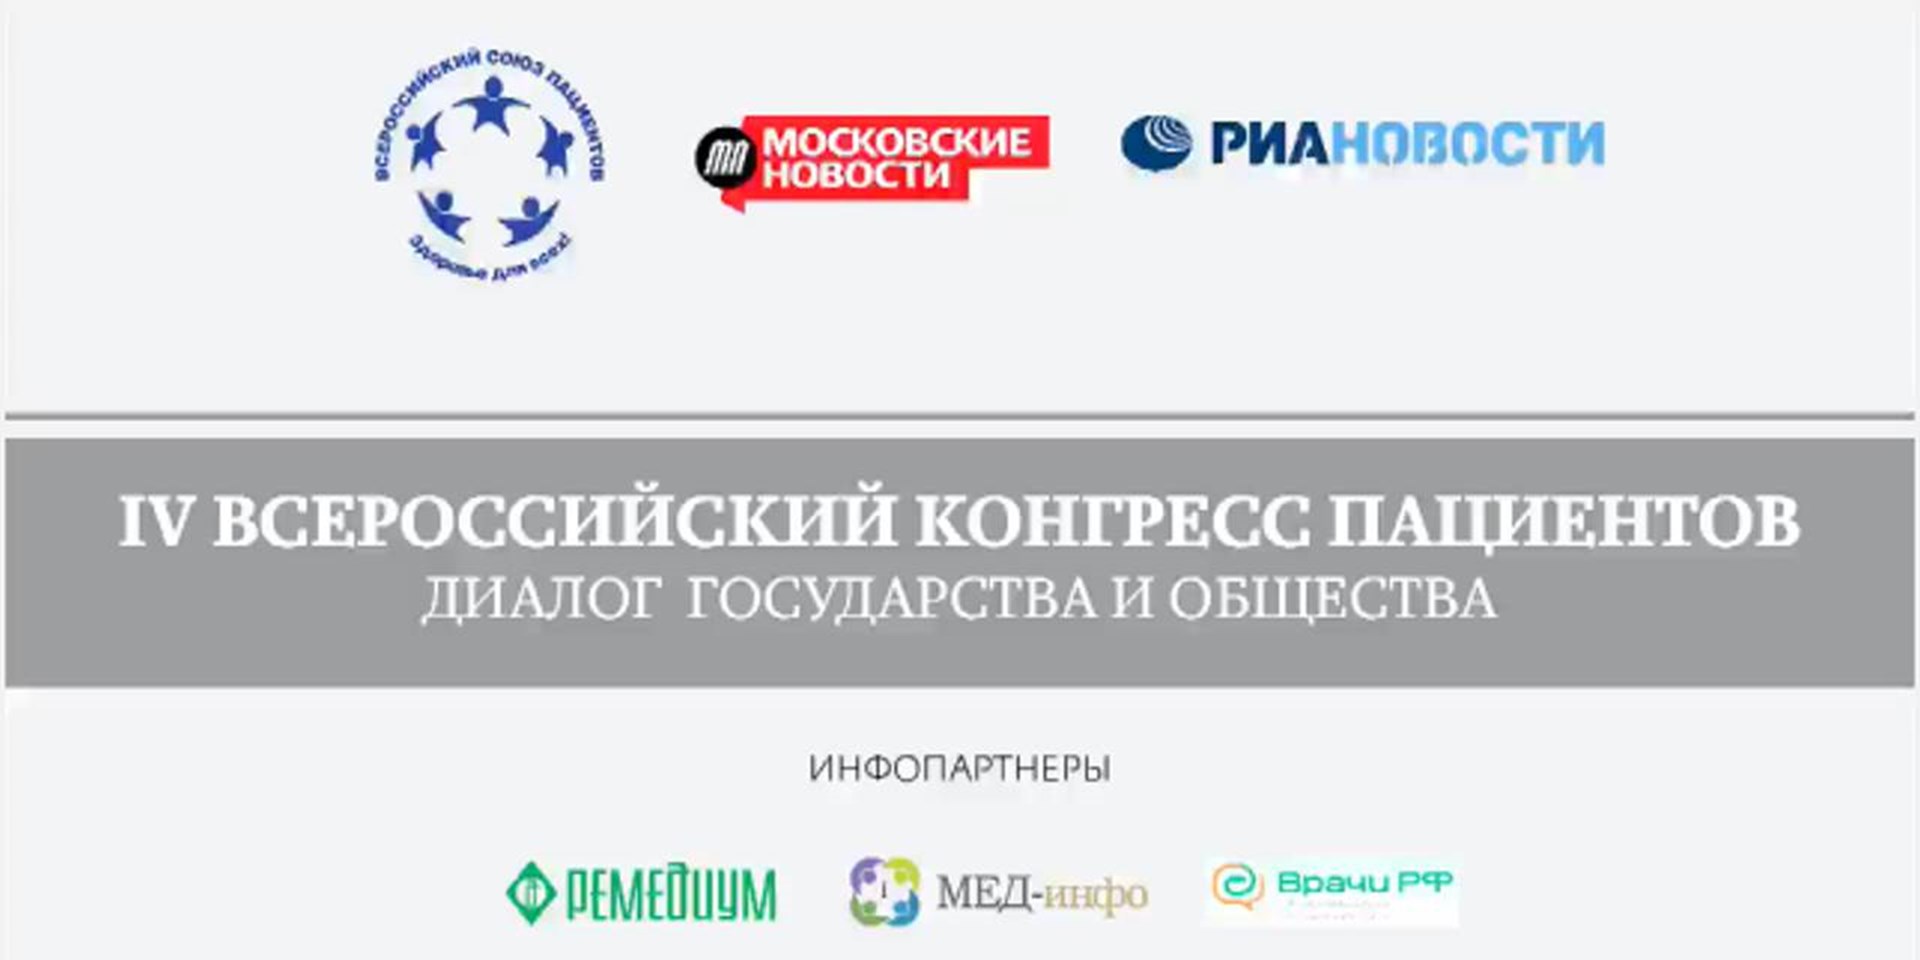 В Москве 25-26 ноября 2013 года состоится  IV Всероссийский конгресс пациентов